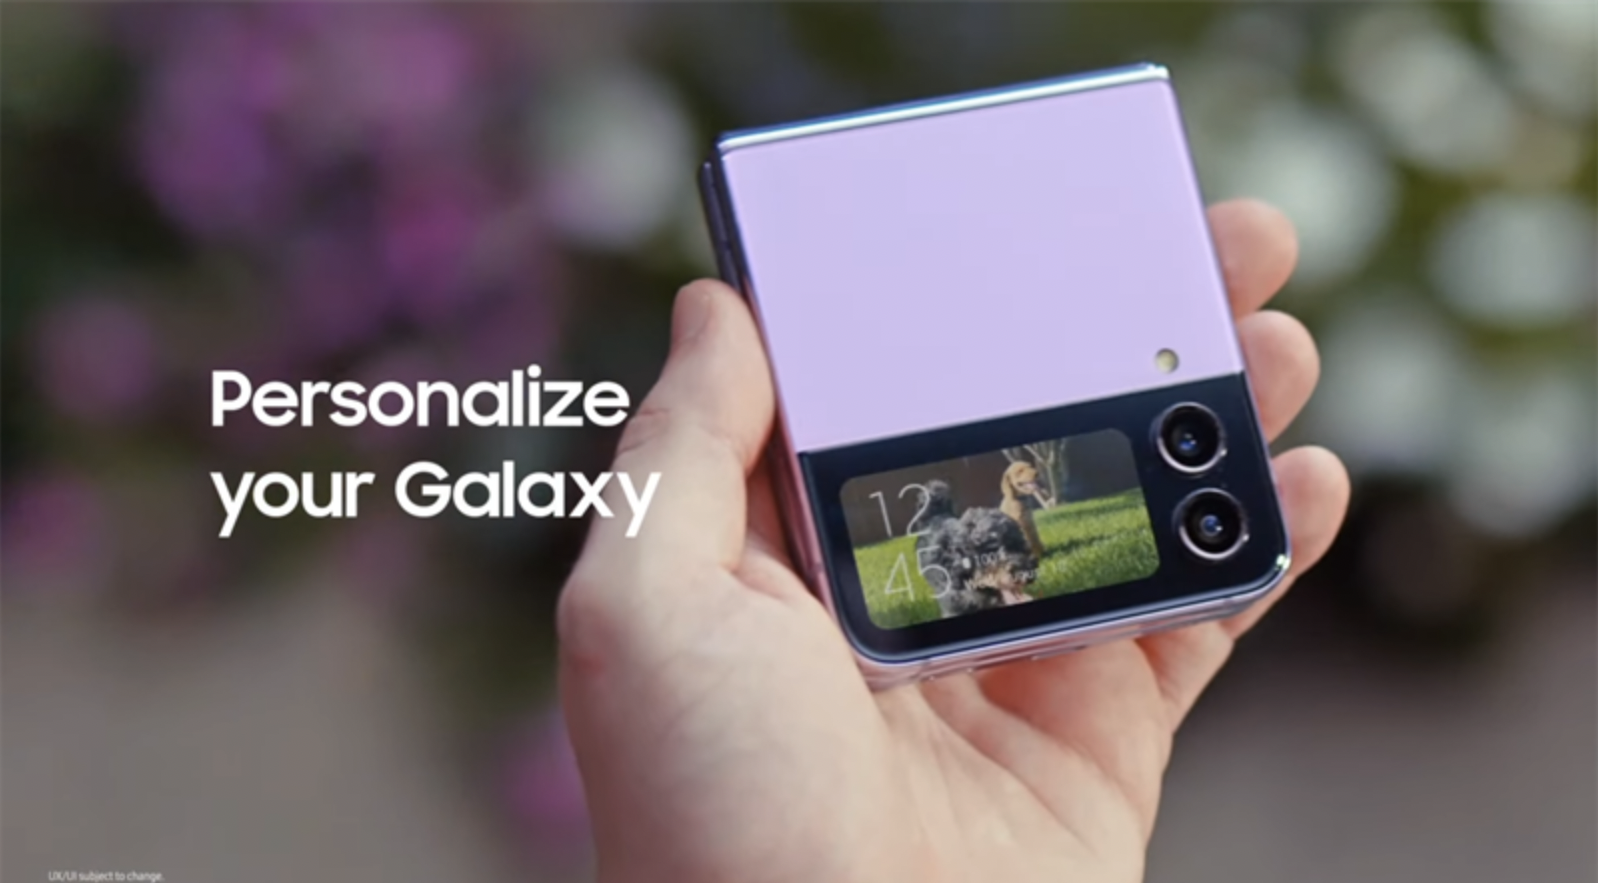 Samsung Galaxy Z Flip 4: Điện thoại màn hình gập đang là trào lưu mới nhất trong thế giới công nghệ và Samsung Galaxy Z Flip 4 là sản phẩm đáng để bạn xem xét. Với thiết kế đẹp mắt và tính năng đầy tiện ích, chiếc điện thoại này sẽ chắc chắn đem lại trải nghiệm tuyệt vời cho bạn.